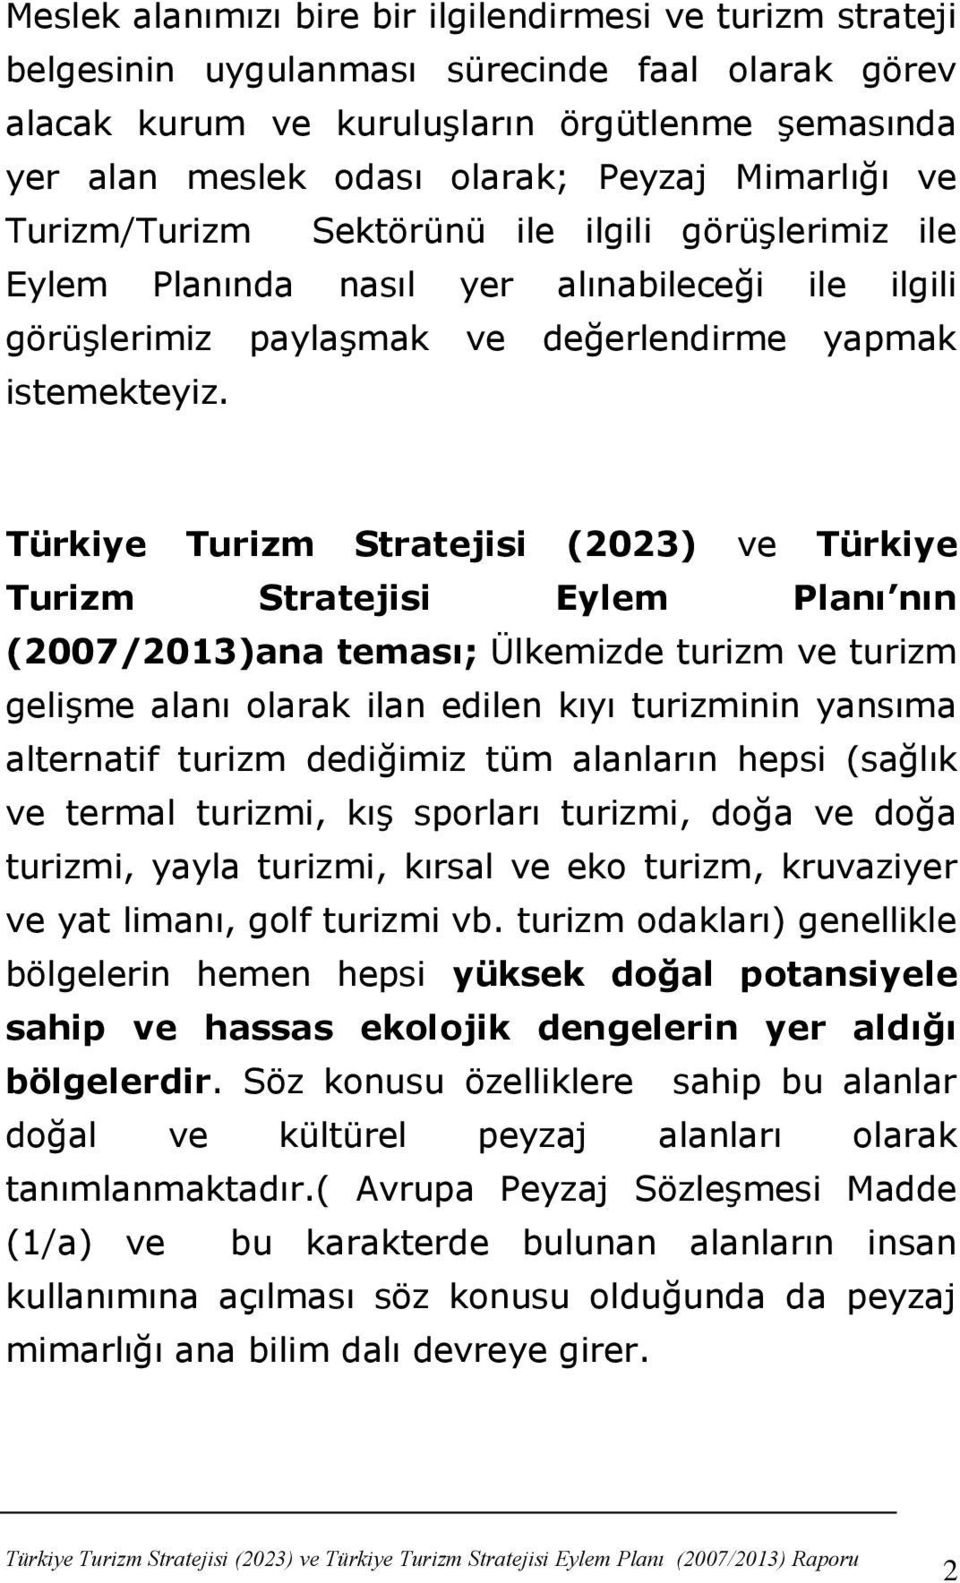 Türkiye Turizm Stratejisi (2023) ve Türkiye Turizm Stratejisi Eylem Planı nın (2007/2013)ana teması; Ülkemizde turizm ve turizm geliģme alanı olarak ilan edilen kıyı turizminin yansıma alternatif